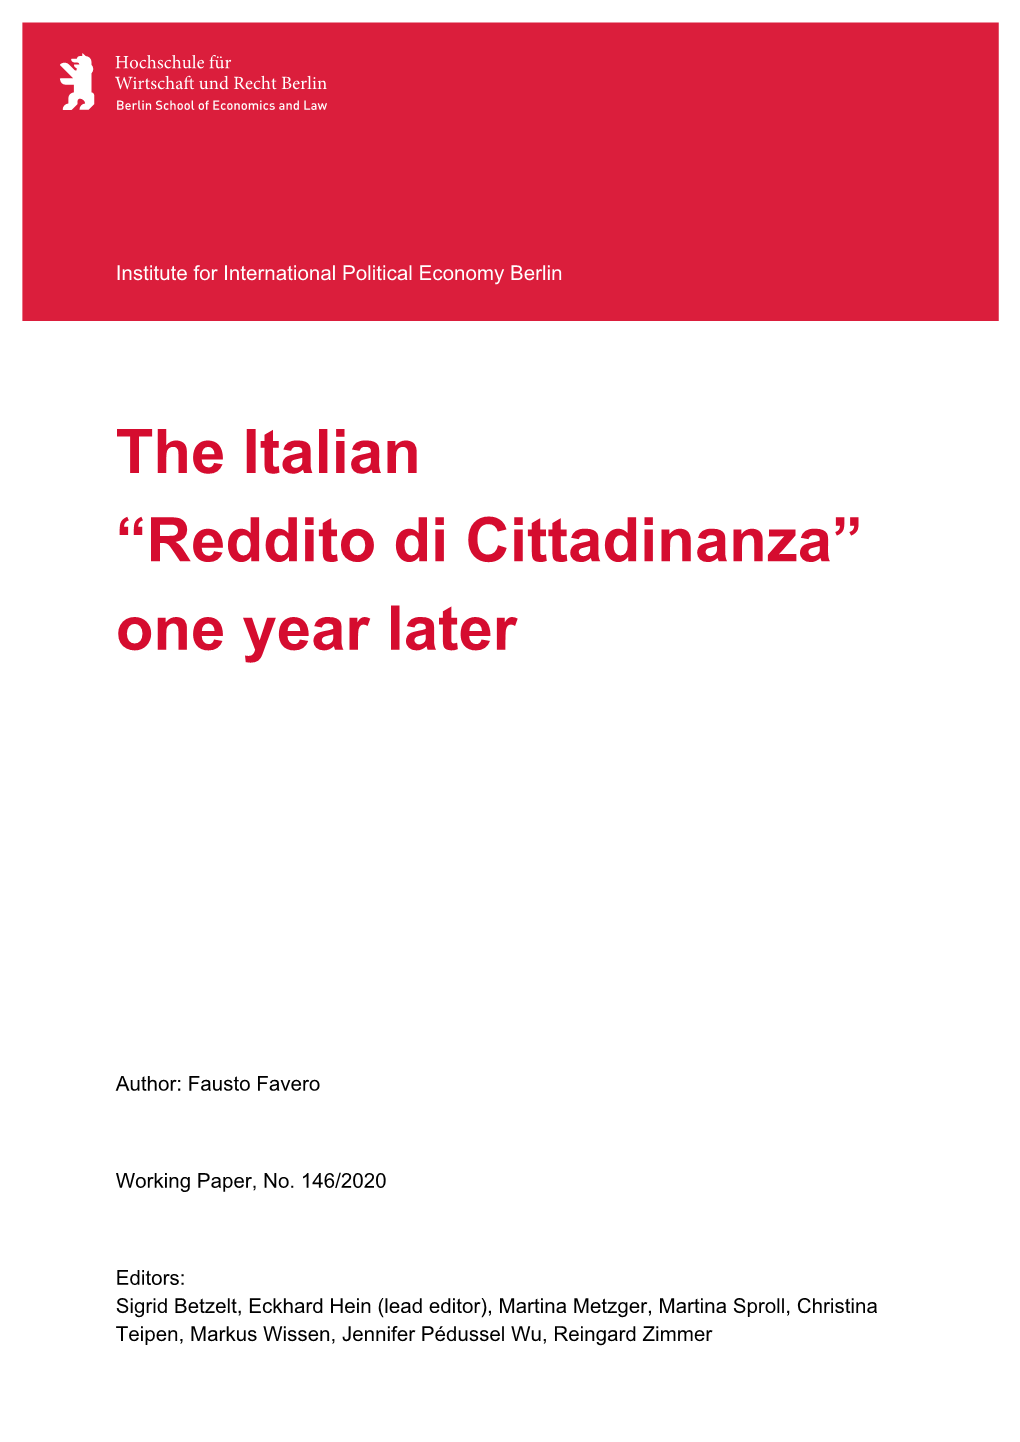 Reddito Di Cittadinanza” One Year Later